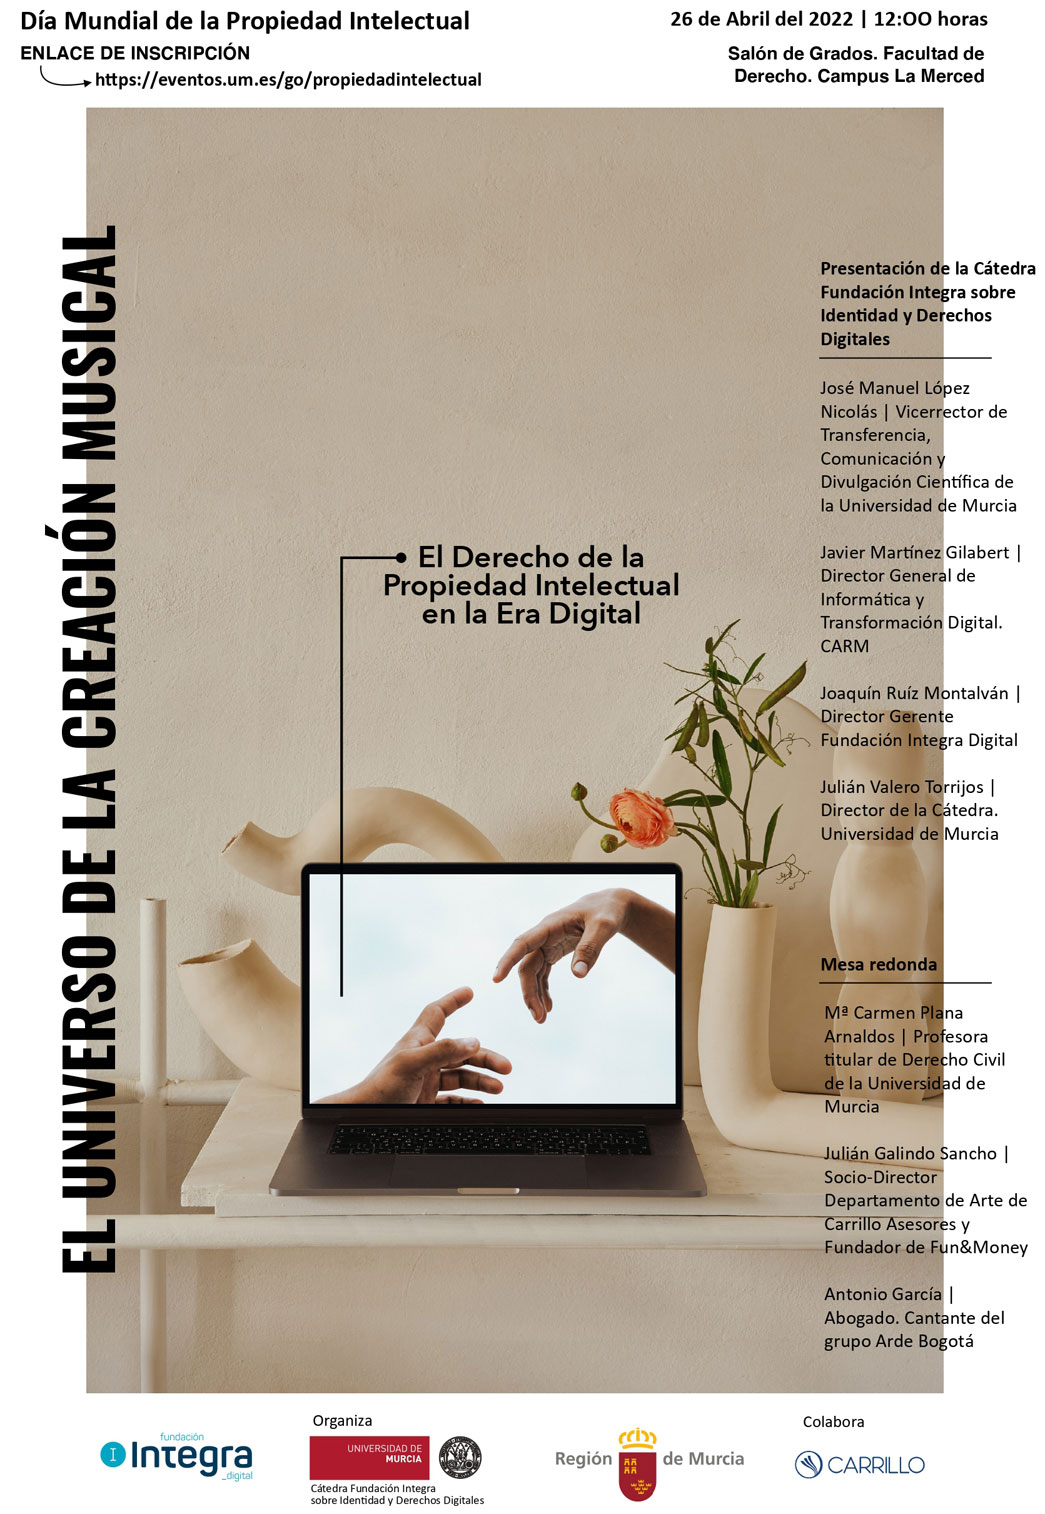 Cartel de la Jornada El Derecho de la Propiedad Intelectual en la Era Digital